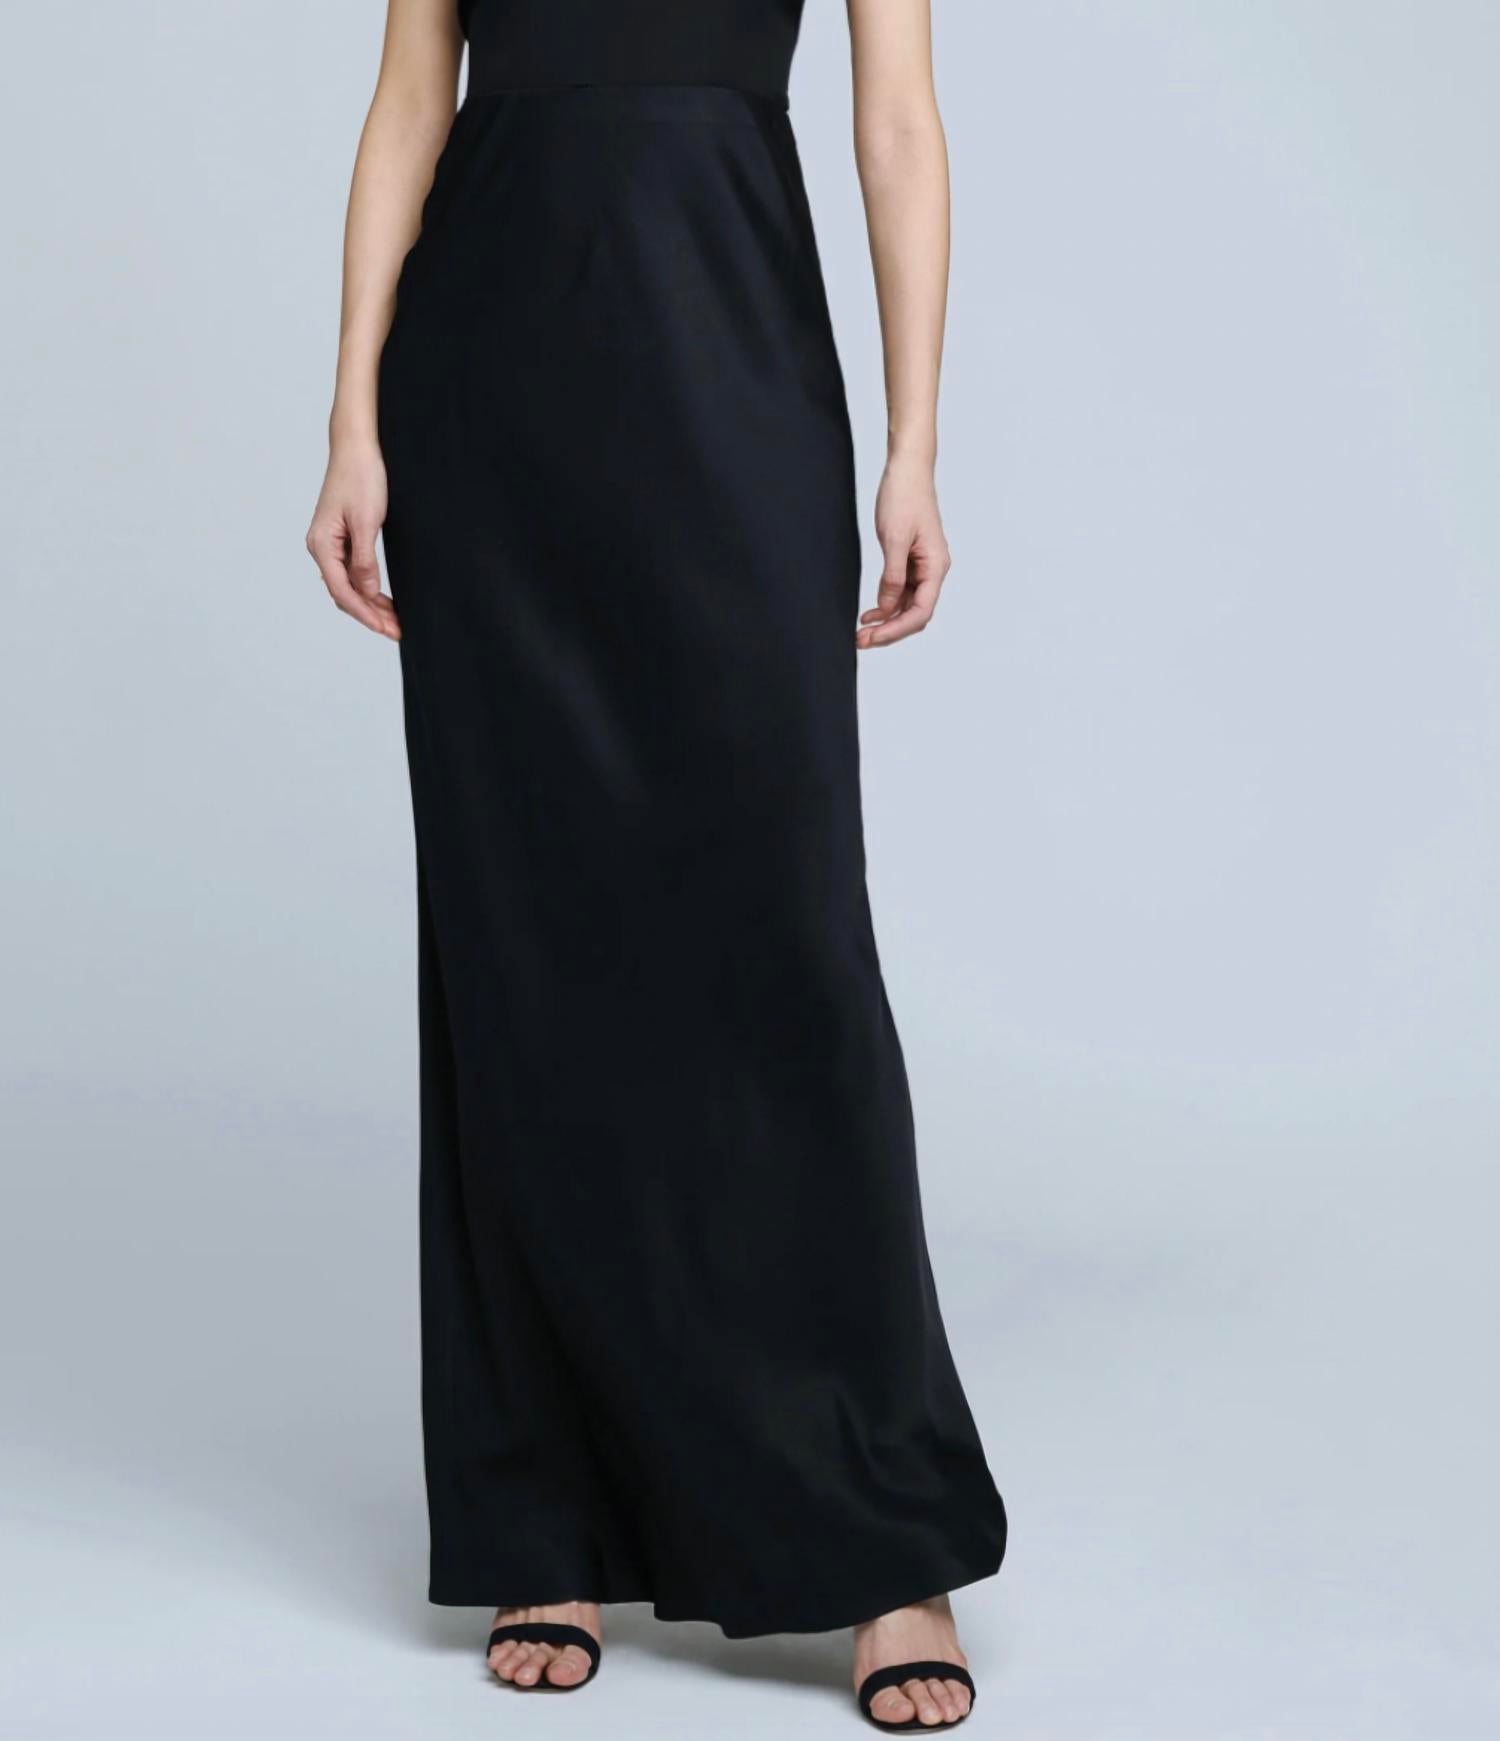 L AGENCE Zeta Long Skirt in Black